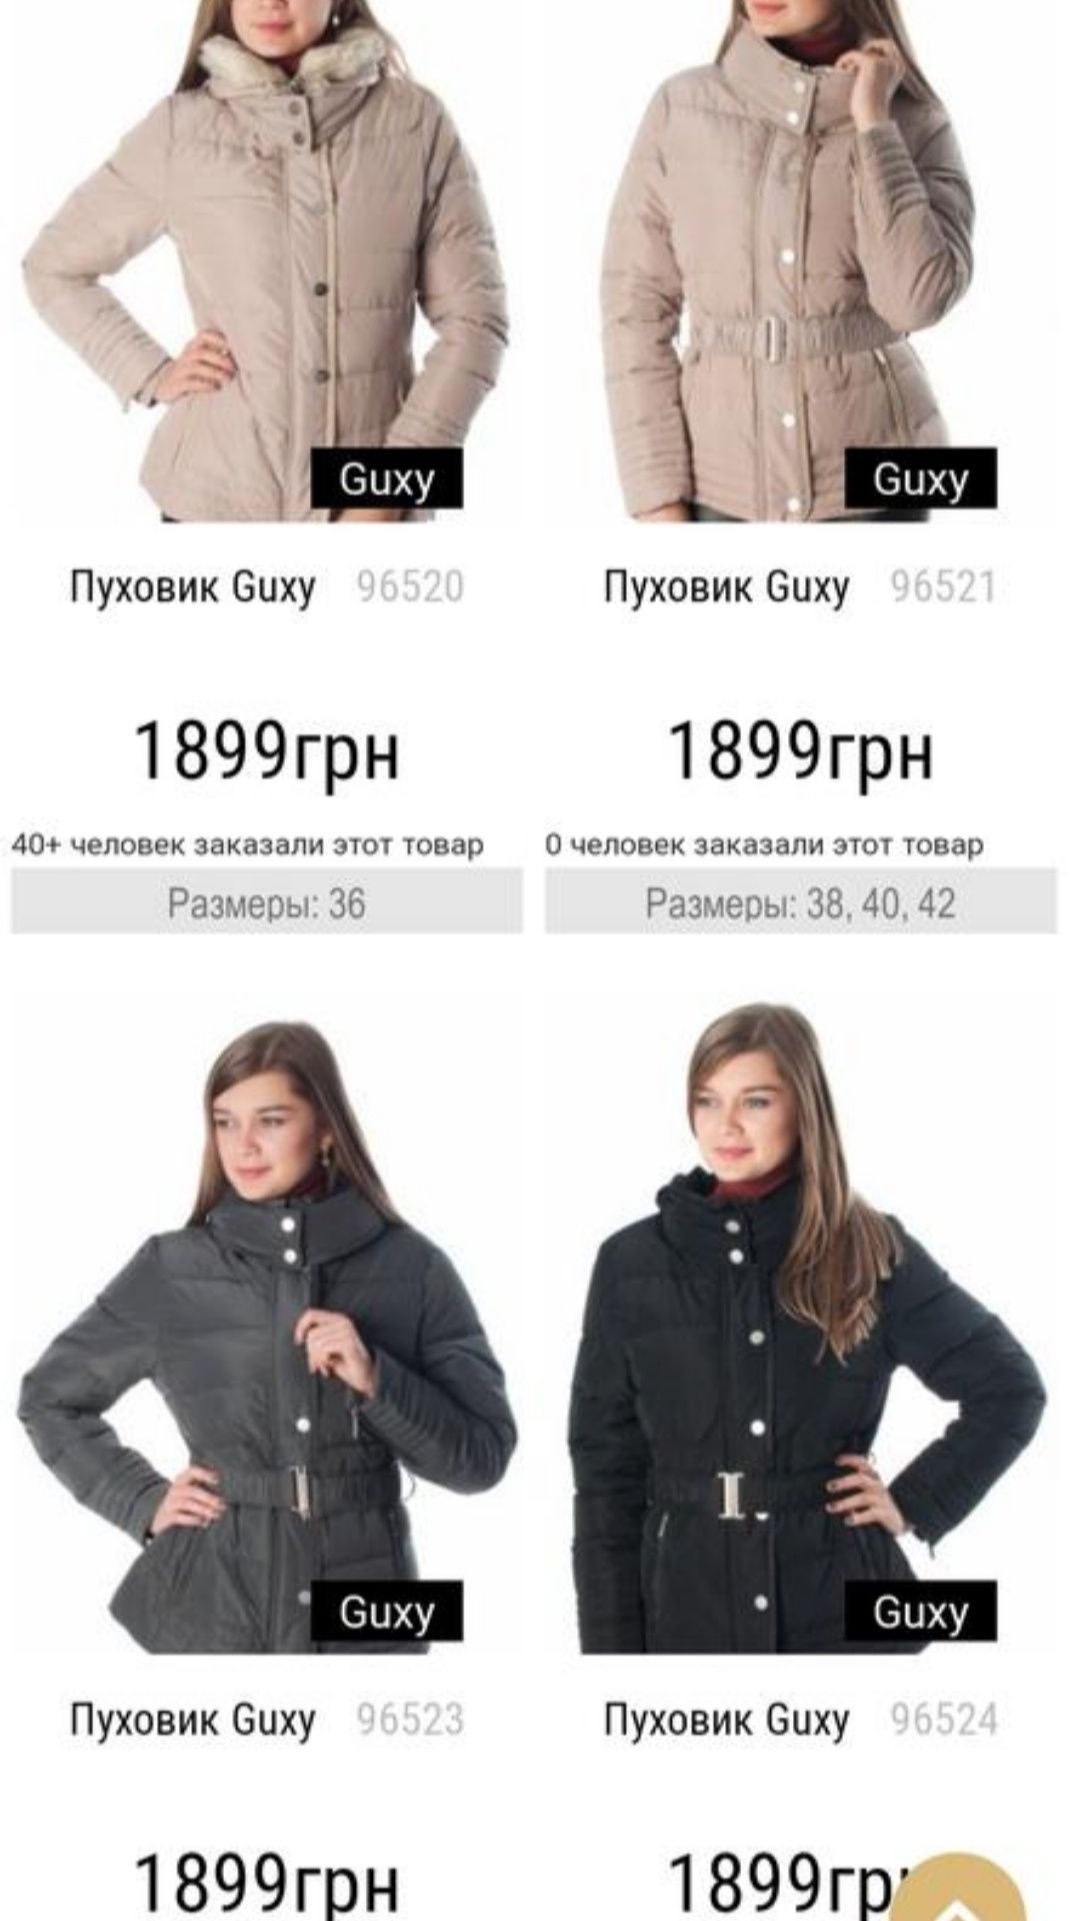 Guxy Италия пуховик куртка на рост 155+-,90/10пух, оригинал